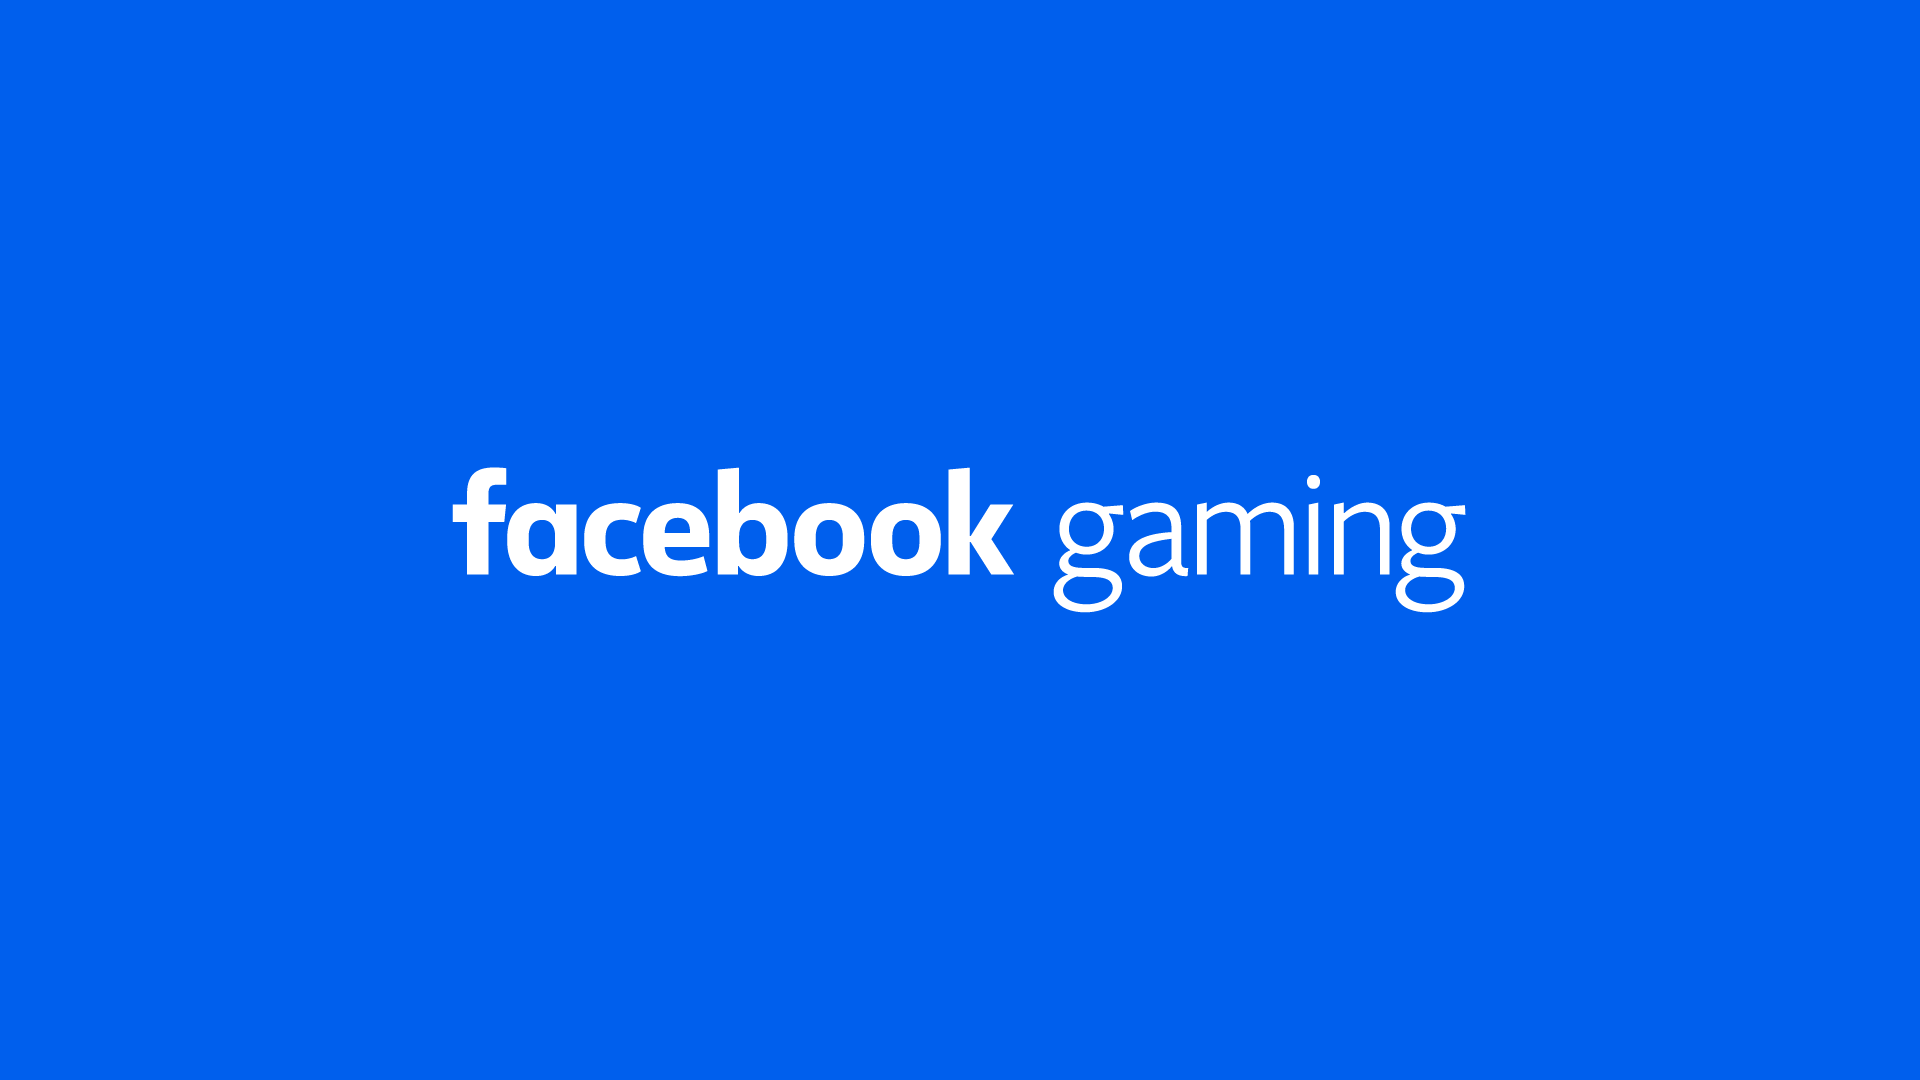 Facebook gaming: app lançado oficialmente | 5a07bbf5 facebook gaming | married games aplicativo | aplicativo | facebook gaming